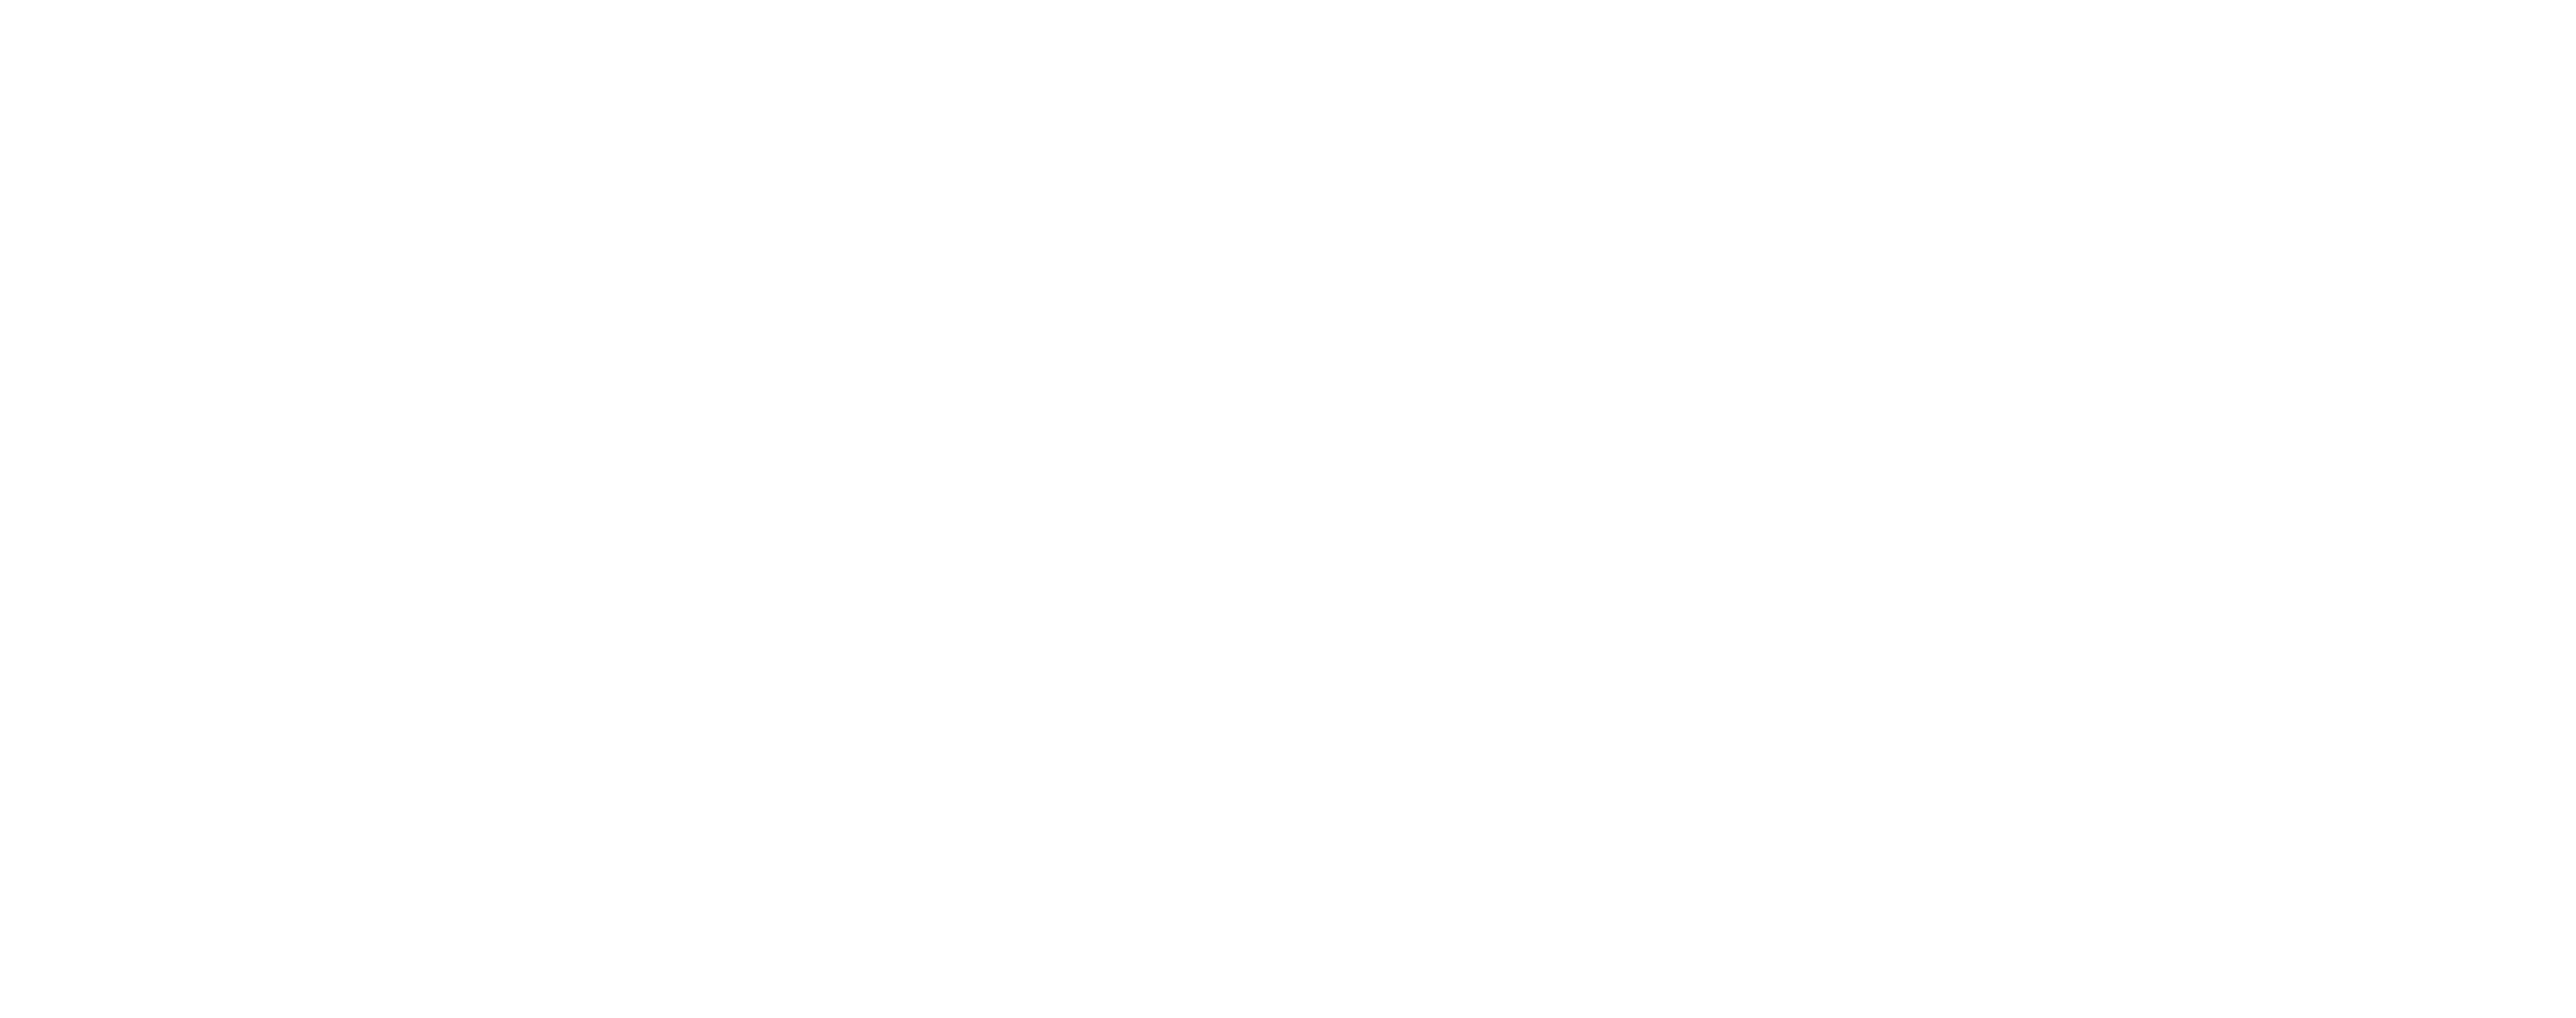 Springer Graphic Design Inc for web white